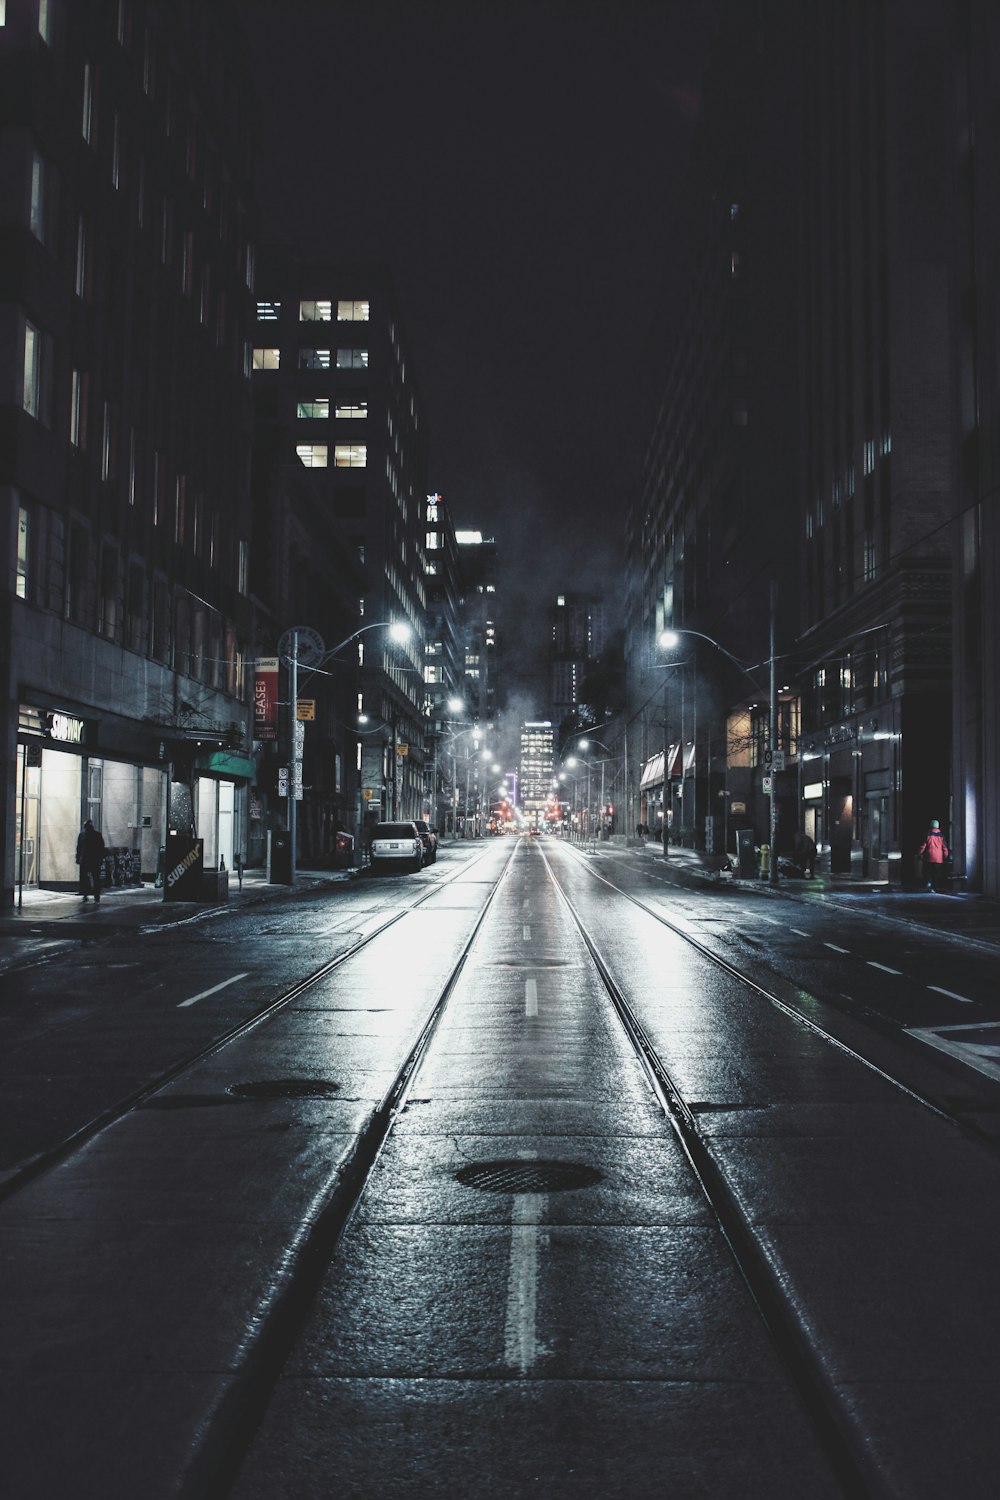 strada vuota in città durante la notte